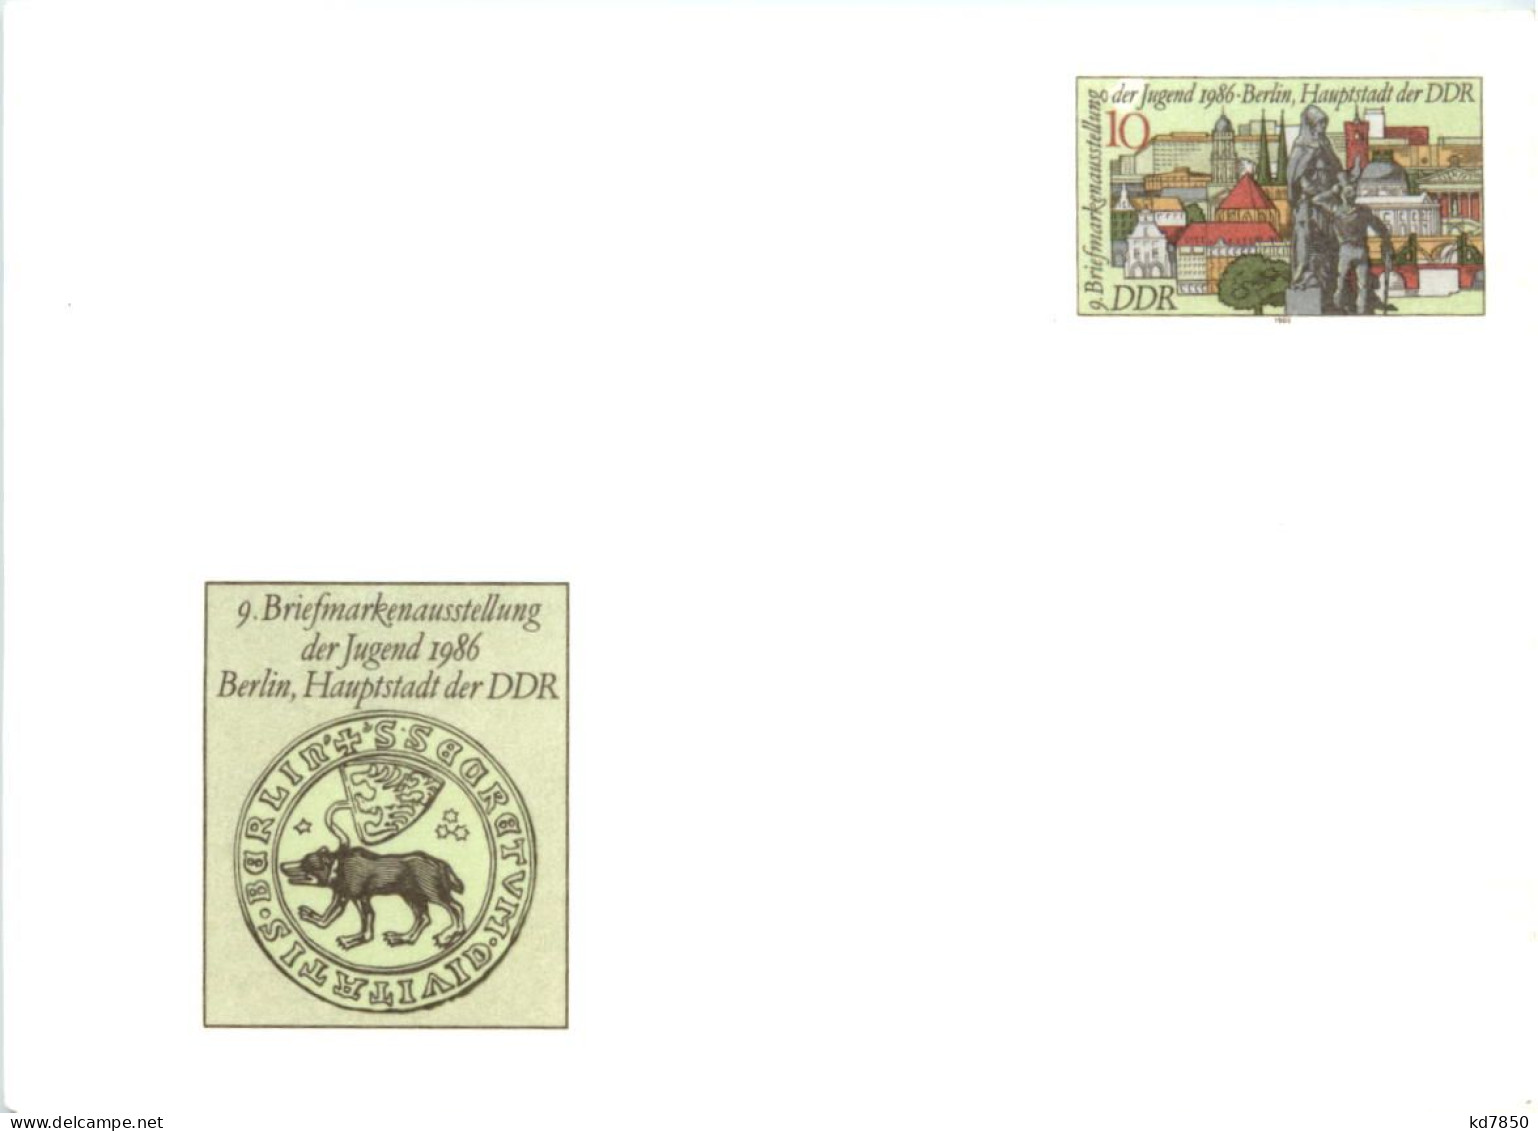 DDR - Berlin - 9. Briefmarkenausstellung 1986 - Ganzsache - Postcards - Mint